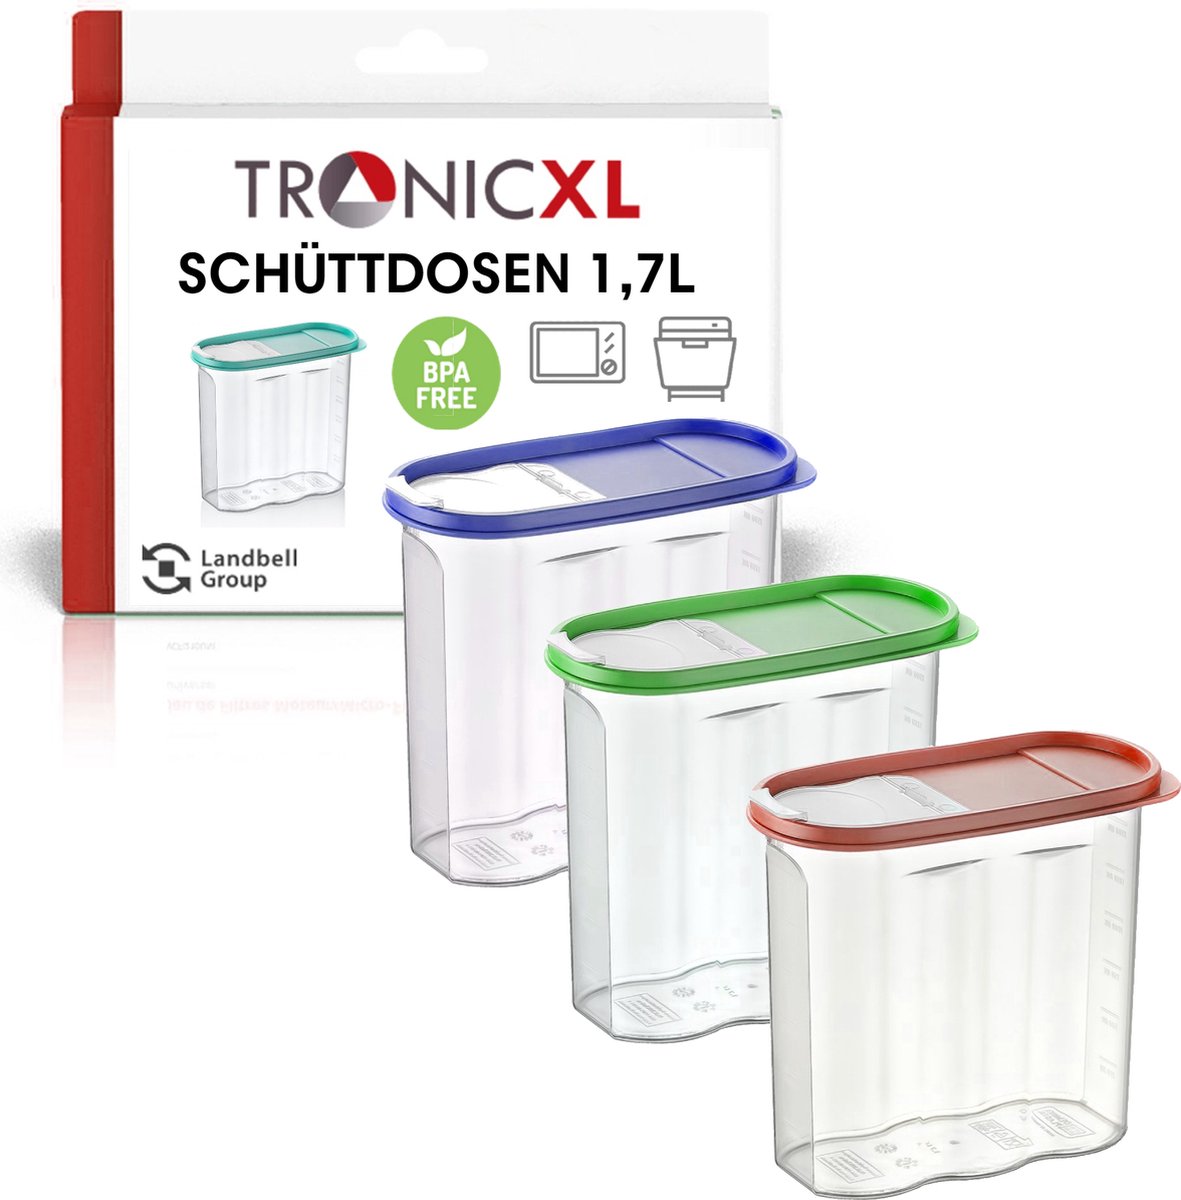 TRONICXL 4x voorraadcontainers Box 1,7 liter voedselopslagcontainers BPA vrij - kunststof voorraadcontainer 1,7 liter